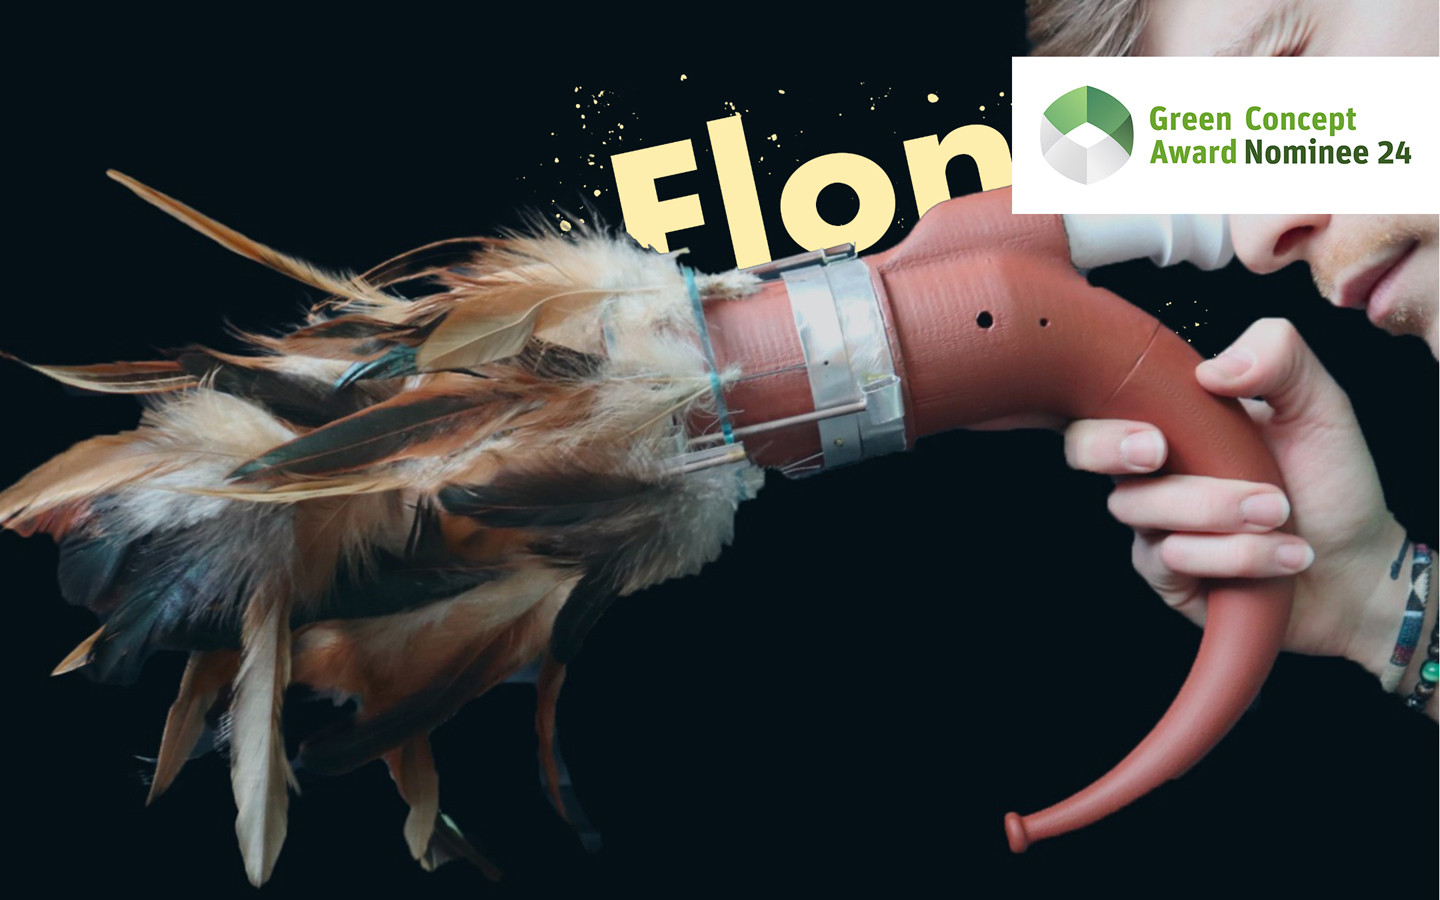 Flone